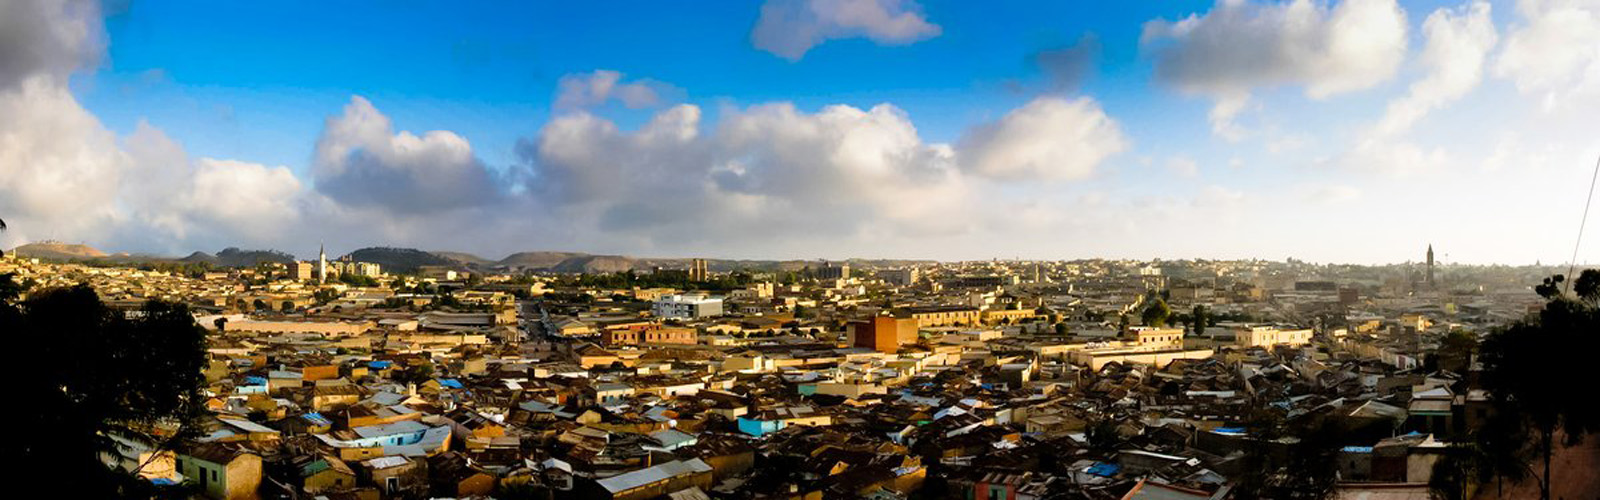 Asmara: ´City of Dreams´ given UNESCO heritage listing